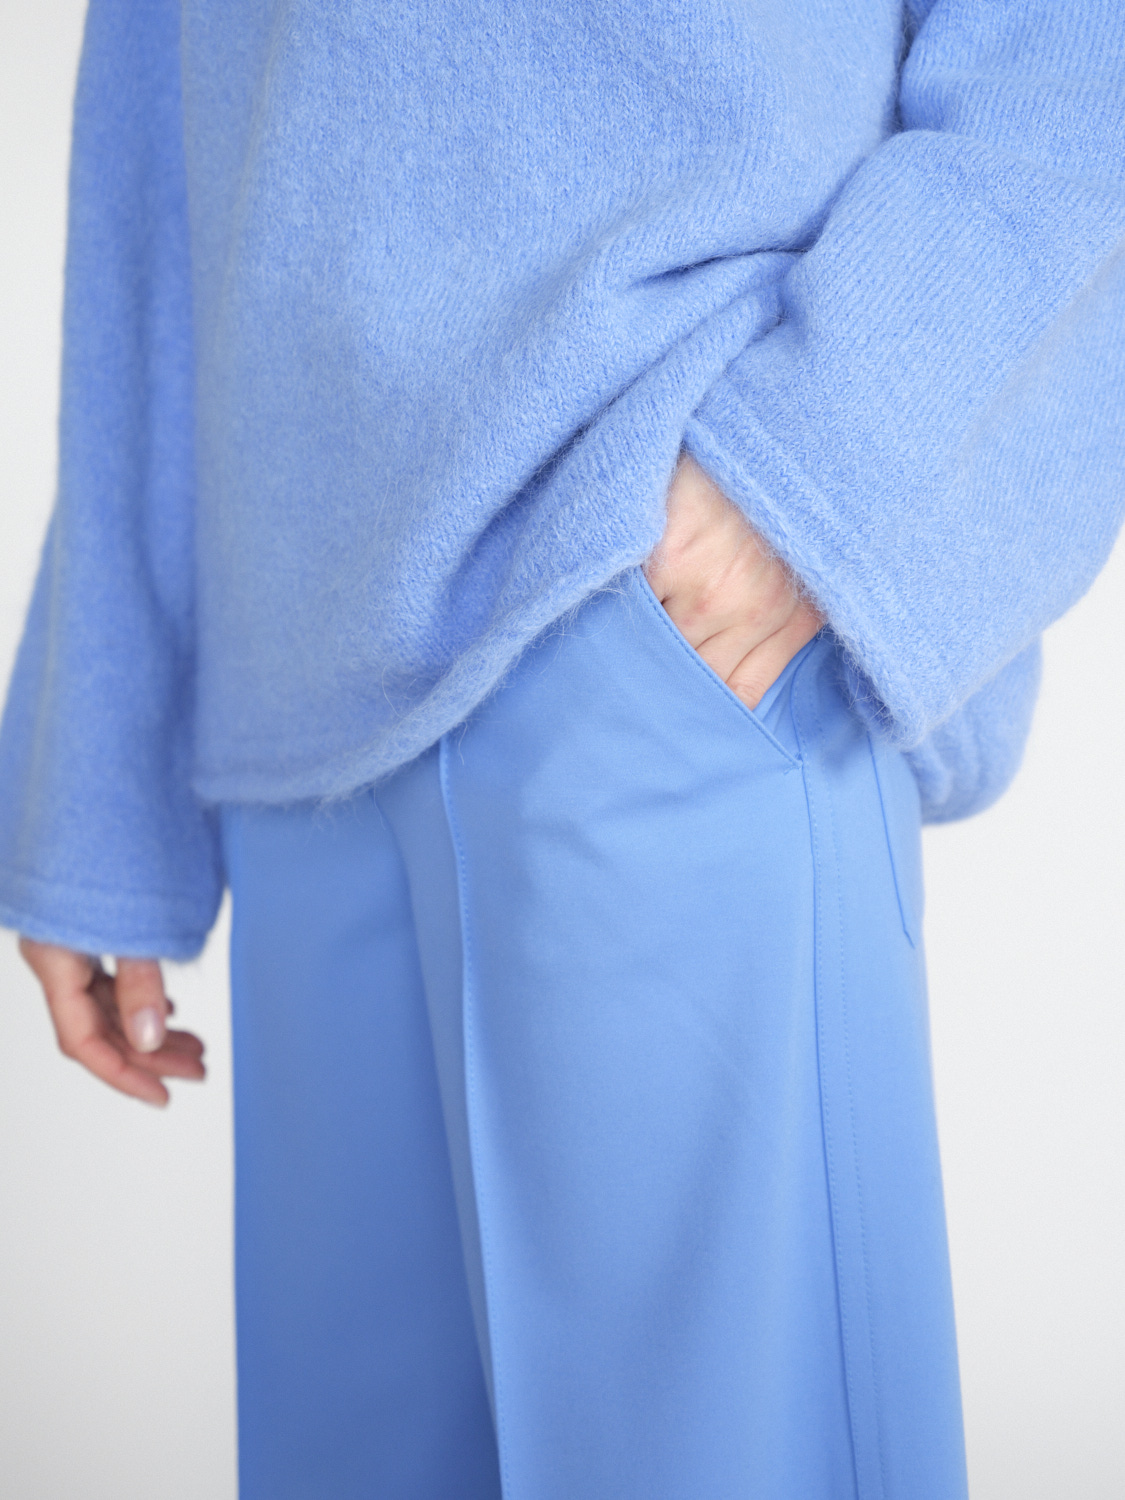 Dorothee Schumacher Cozy Comfort - Maglia oversize in misto alpaca  blu M